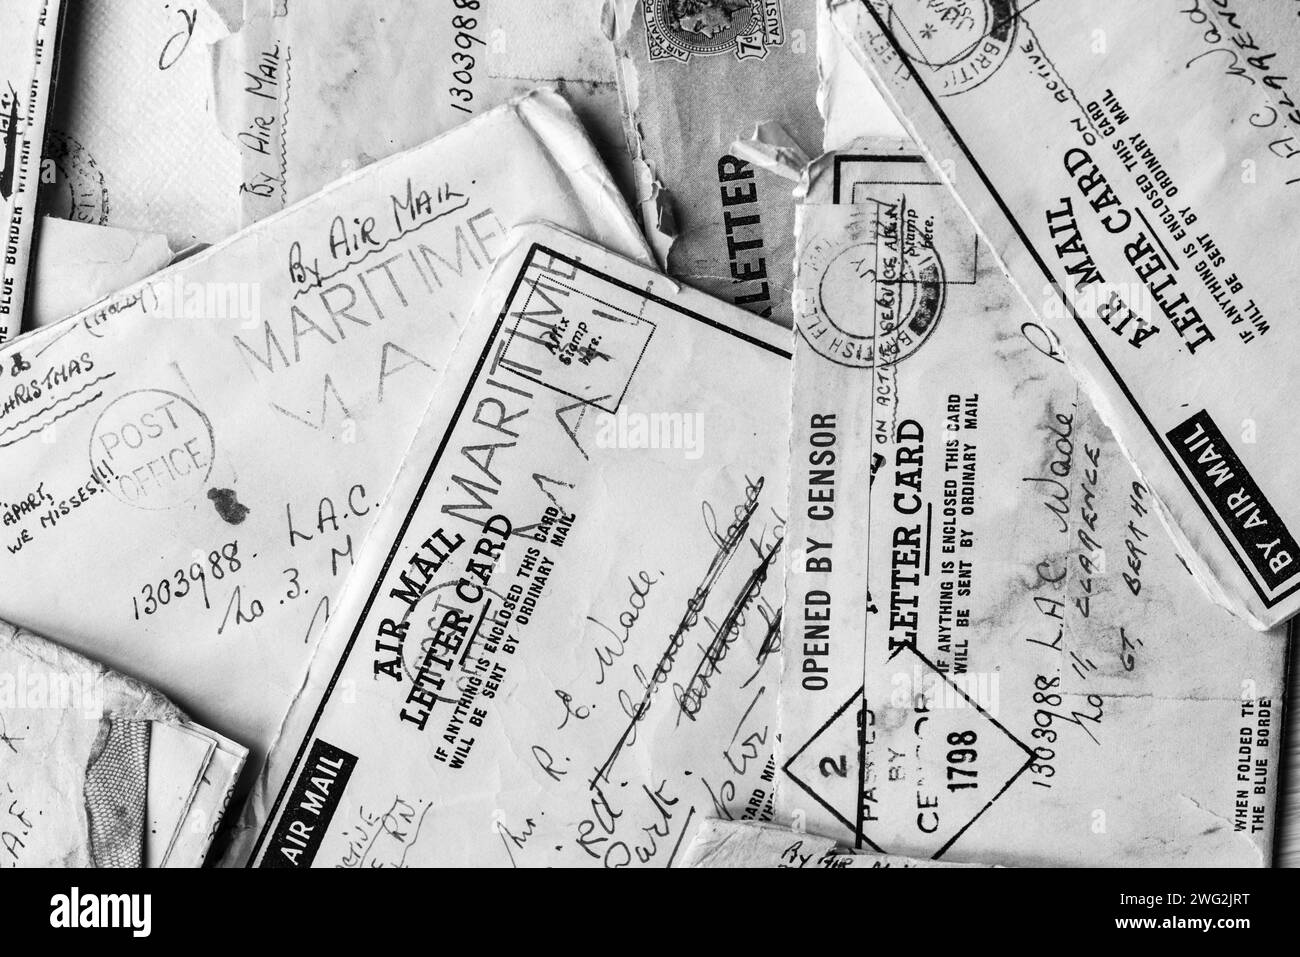 Lettere di posta aerea della seconda guerra mondiale via posta marittima da un Wren a un gentiluomo della RAF che mostra segni di posta, censura ecc. rimanendo in contatto nei momenti difficili. Foto Stock